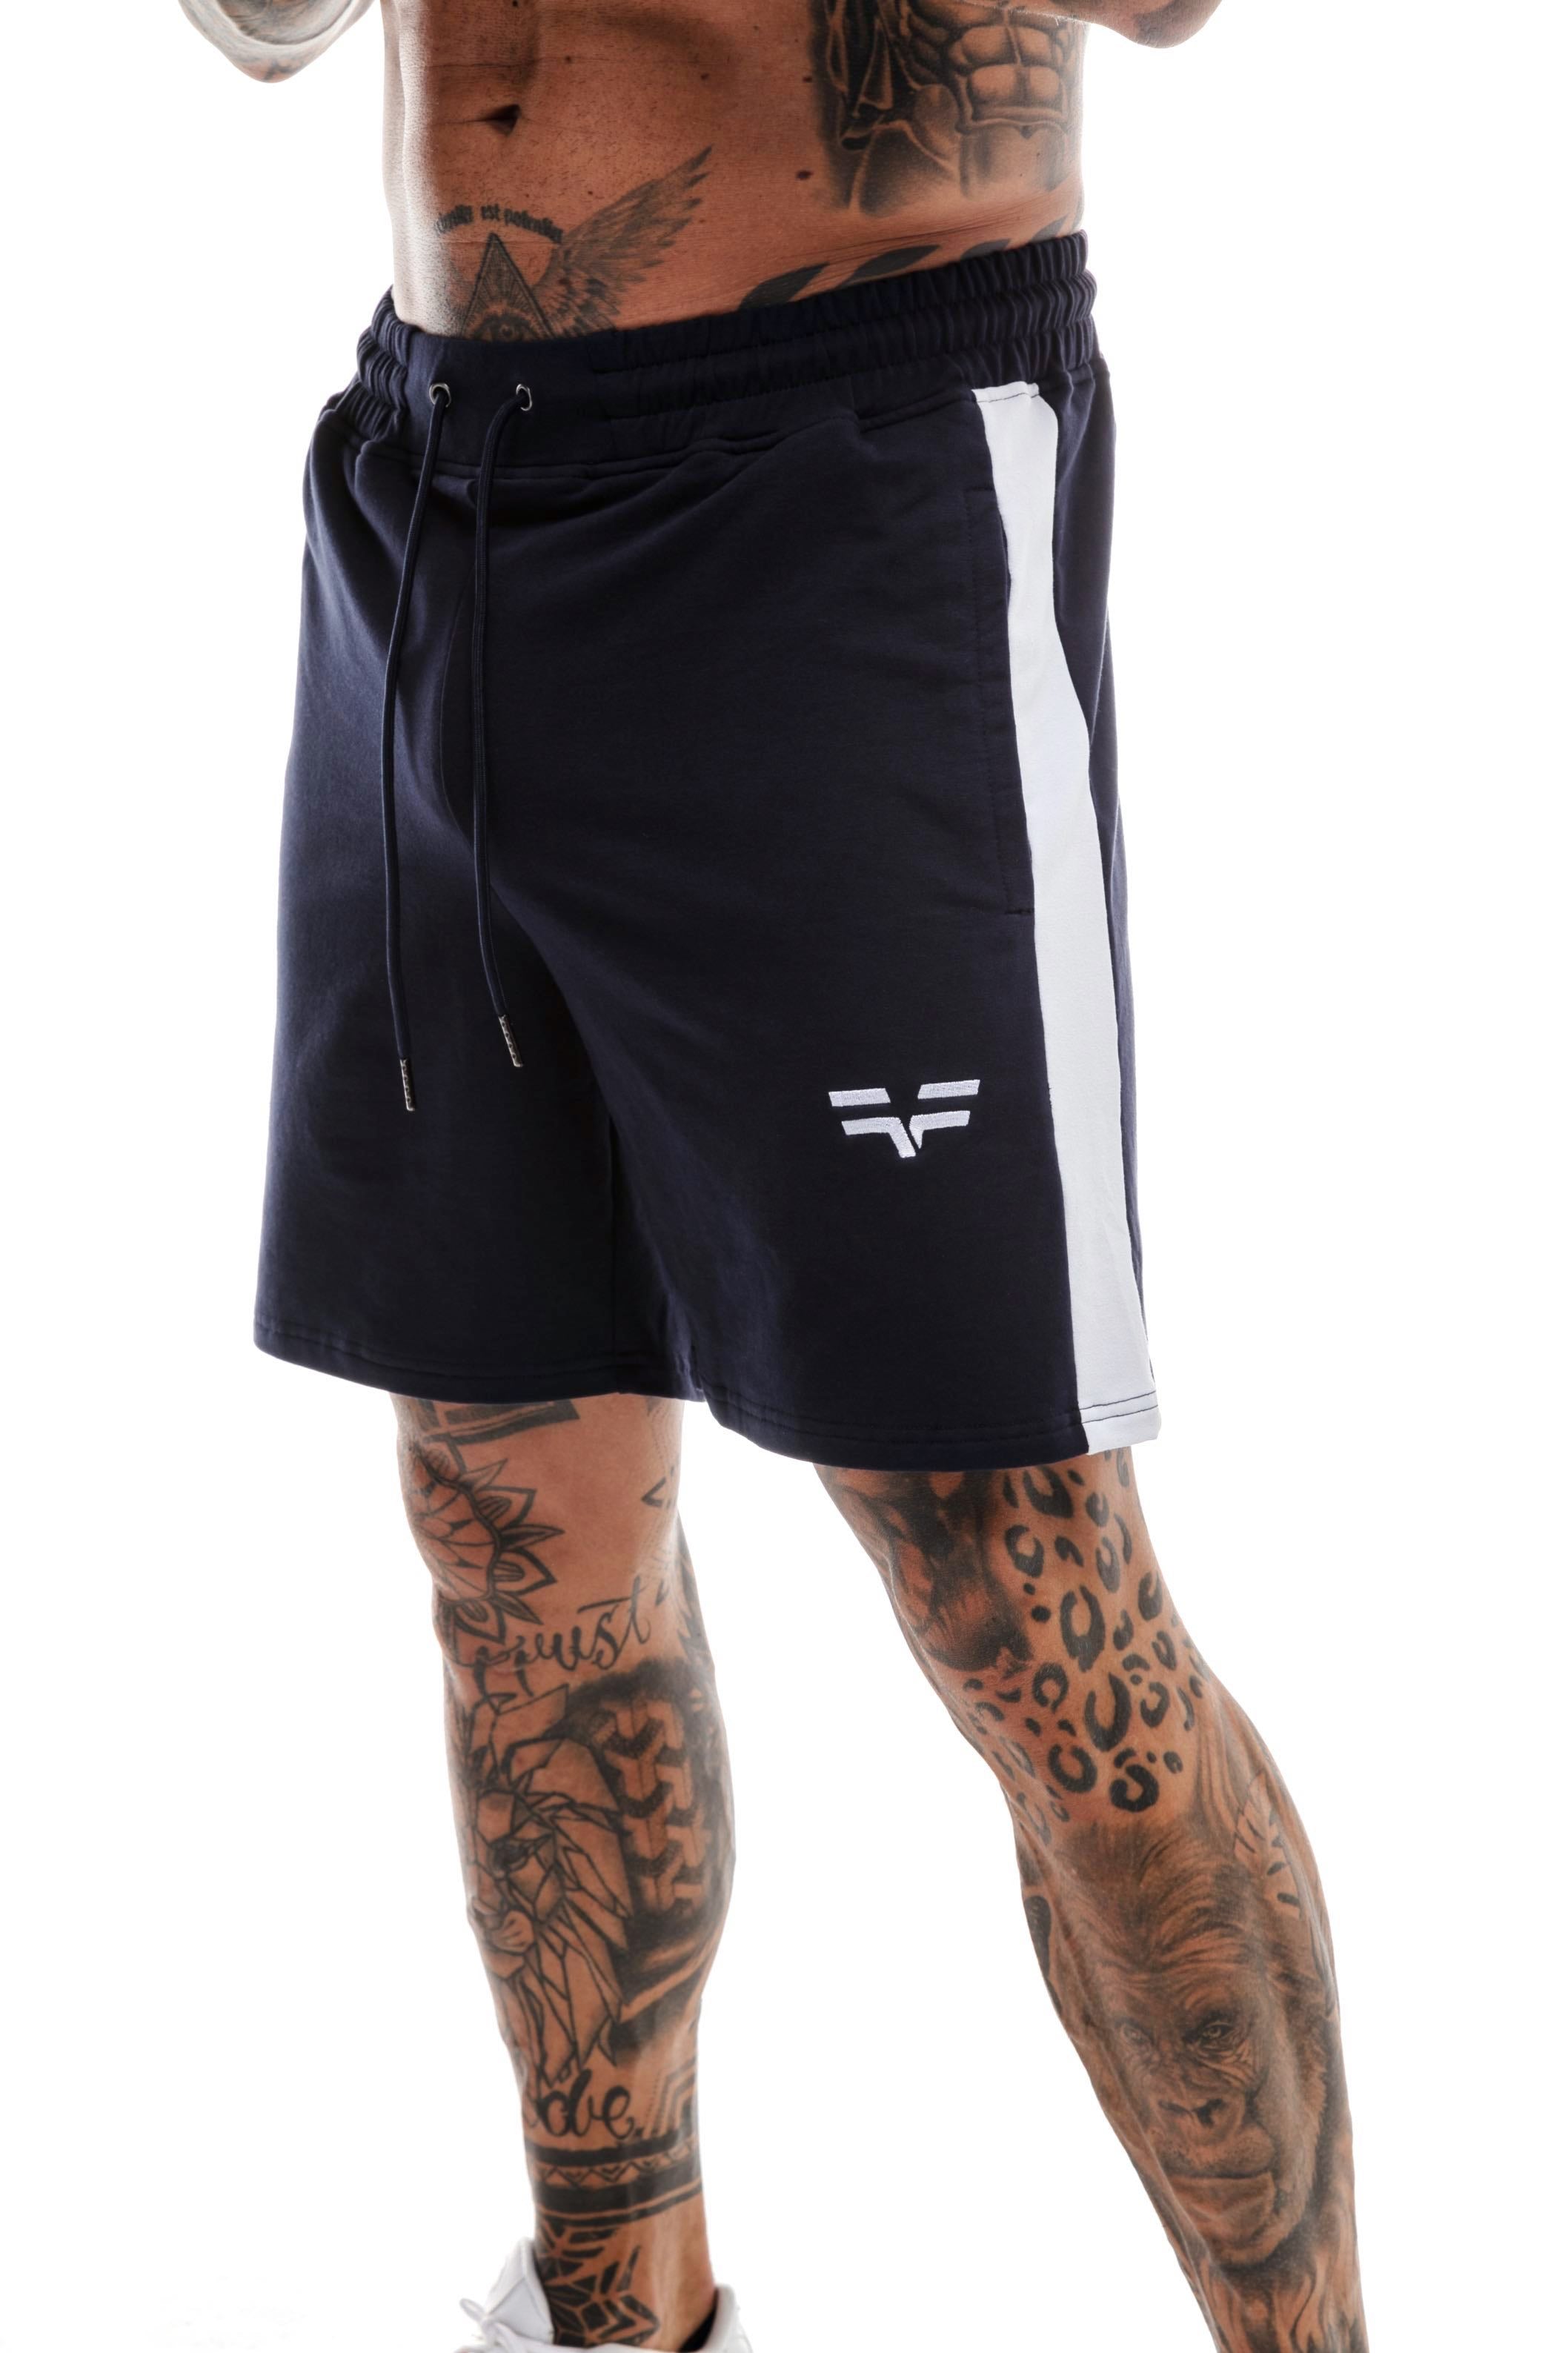 GymFreak Mens Icon Range Shorts - Navy Blue - 7 inch